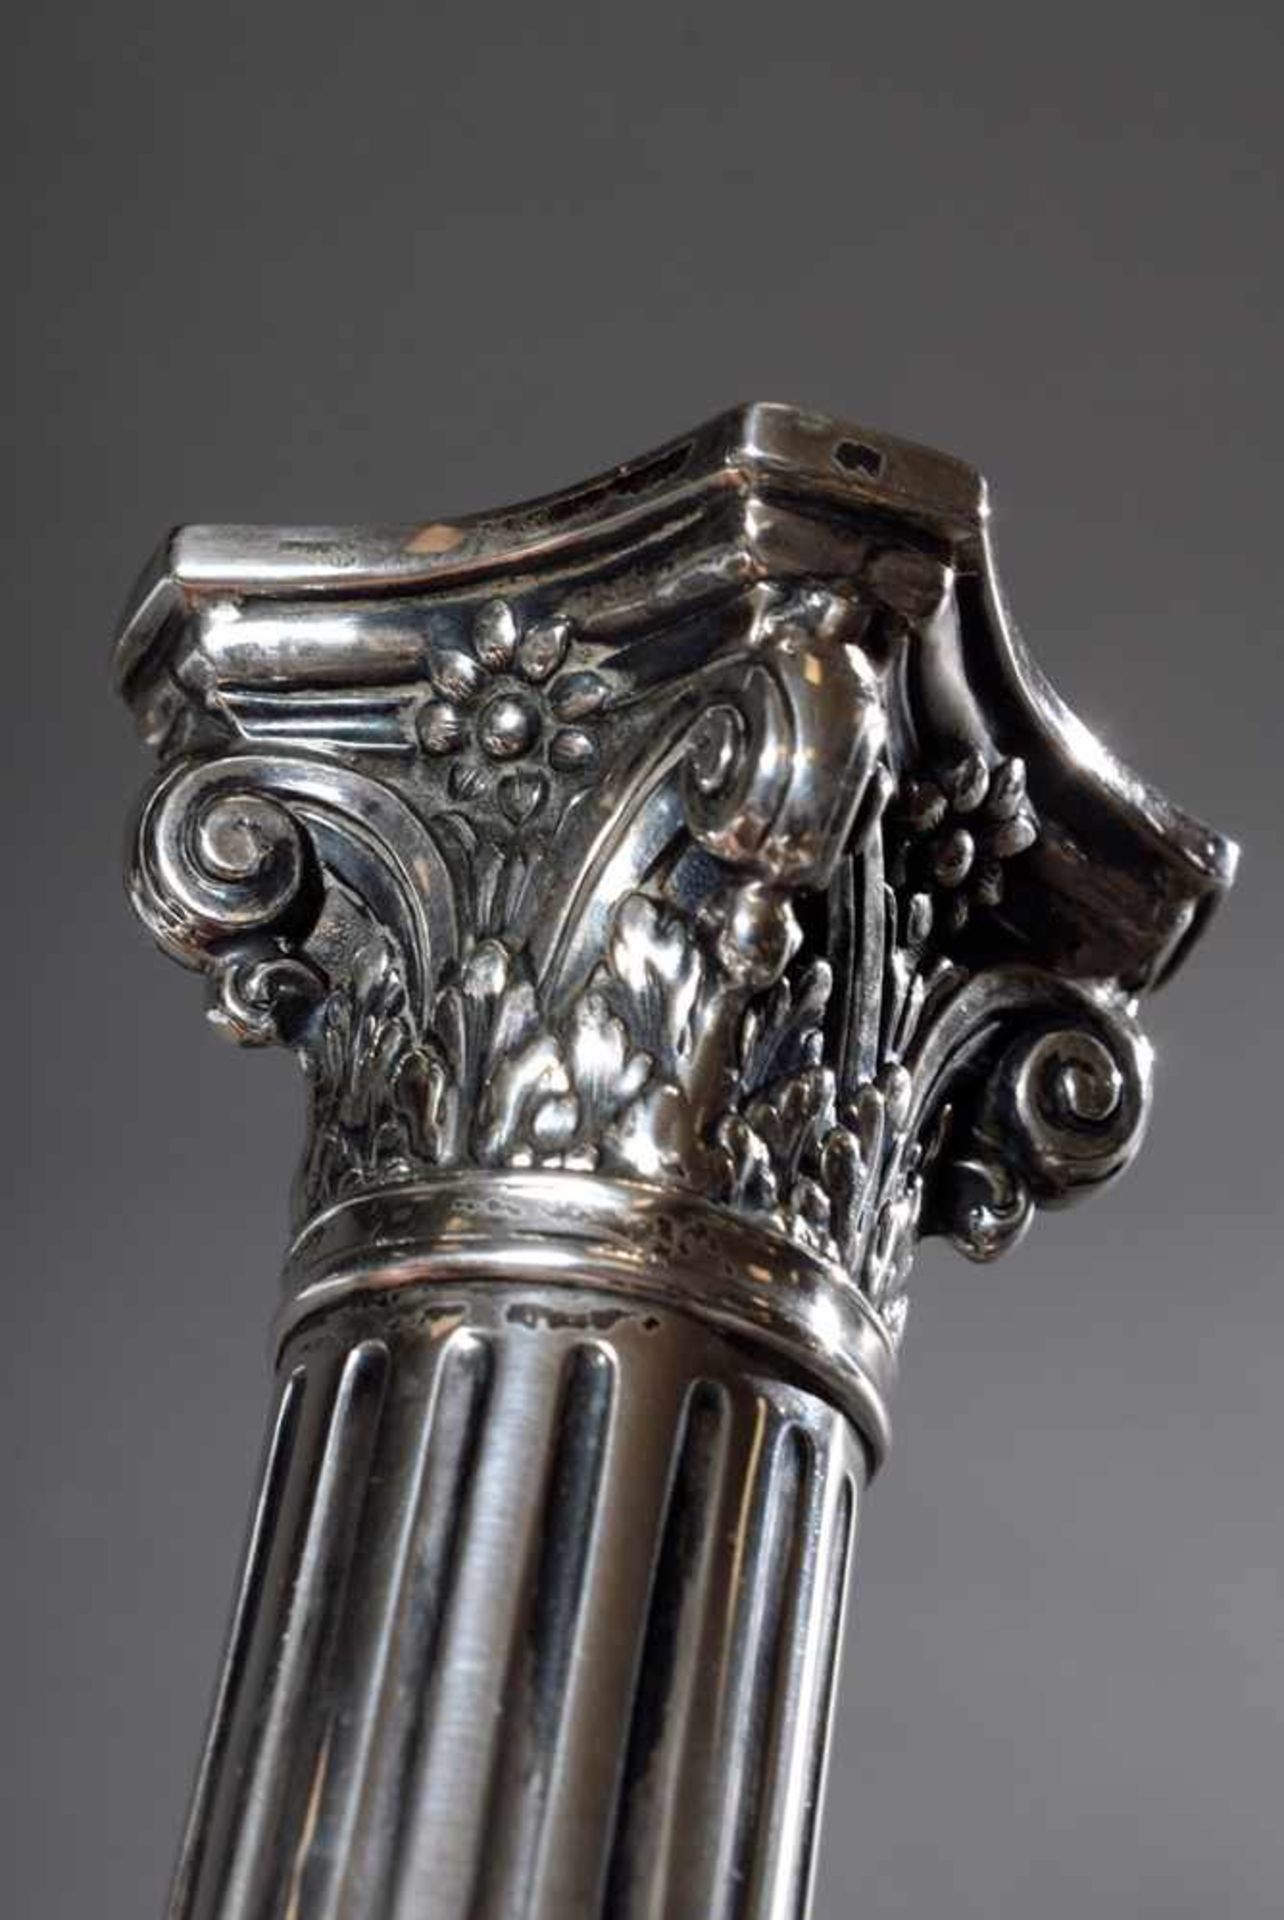 Säulenleuchter mit Kreuzbandmuster und korinthischem Kapitell, Gebrüder Kühn, Silber 800, gefüllt, - Image 2 of 3